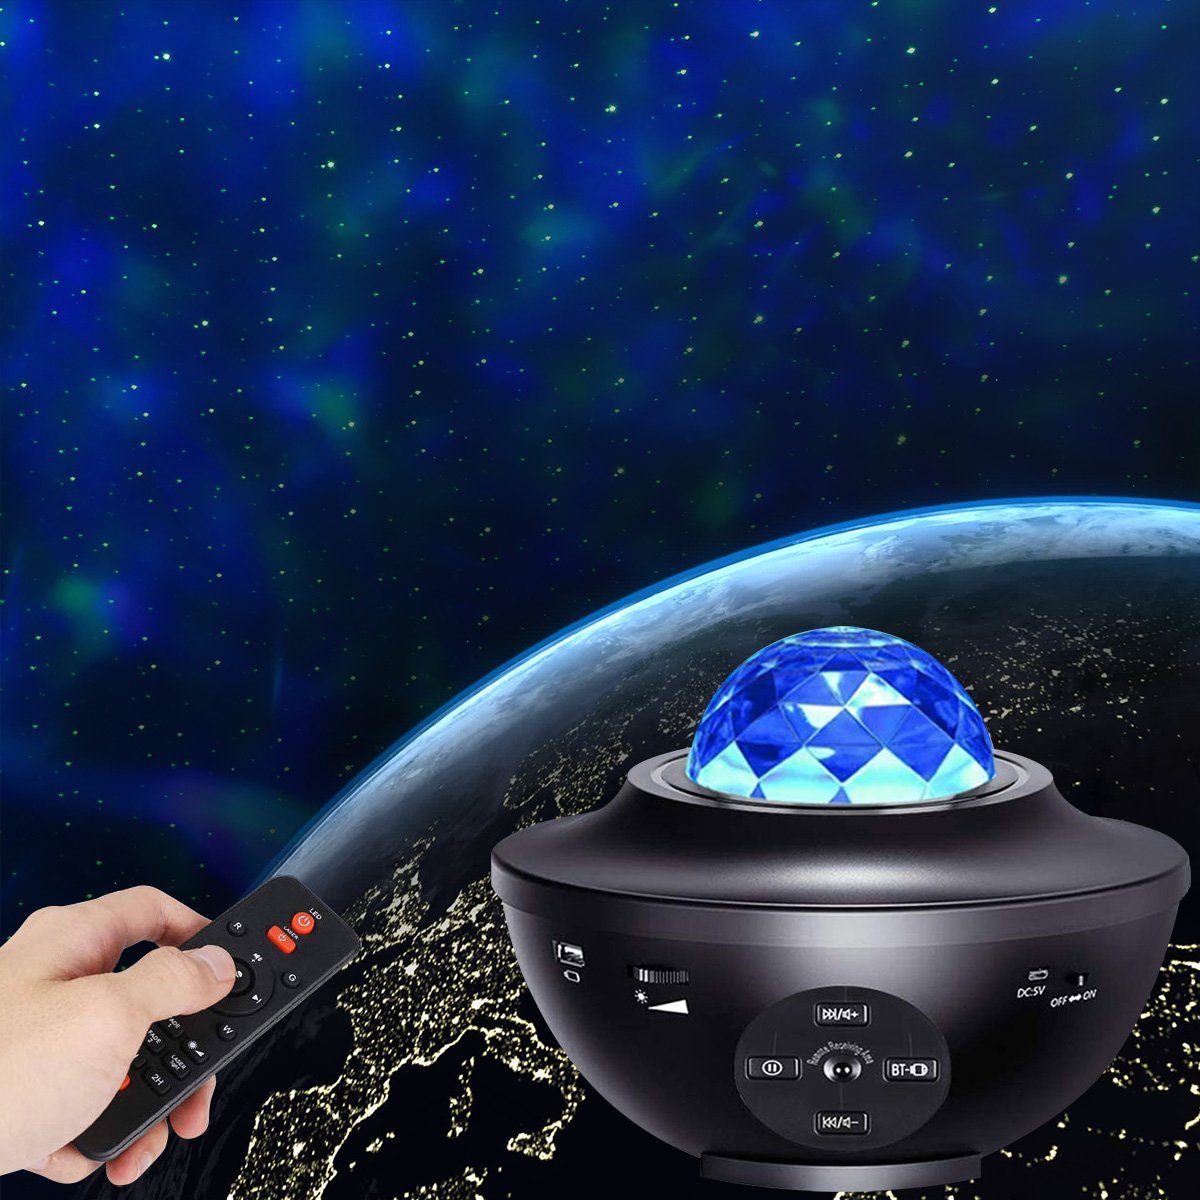 Sunicol LED Nachtlicht LED Musik Projektor, Sternenhimmel Lampe, Bluetooth, Mond Stern, USB, LED wechselbar, Rot, Grün, Blau, Weiß, 21 Beleuchtungsmodi, Fernbedienung Schwarz | Nachtlichter